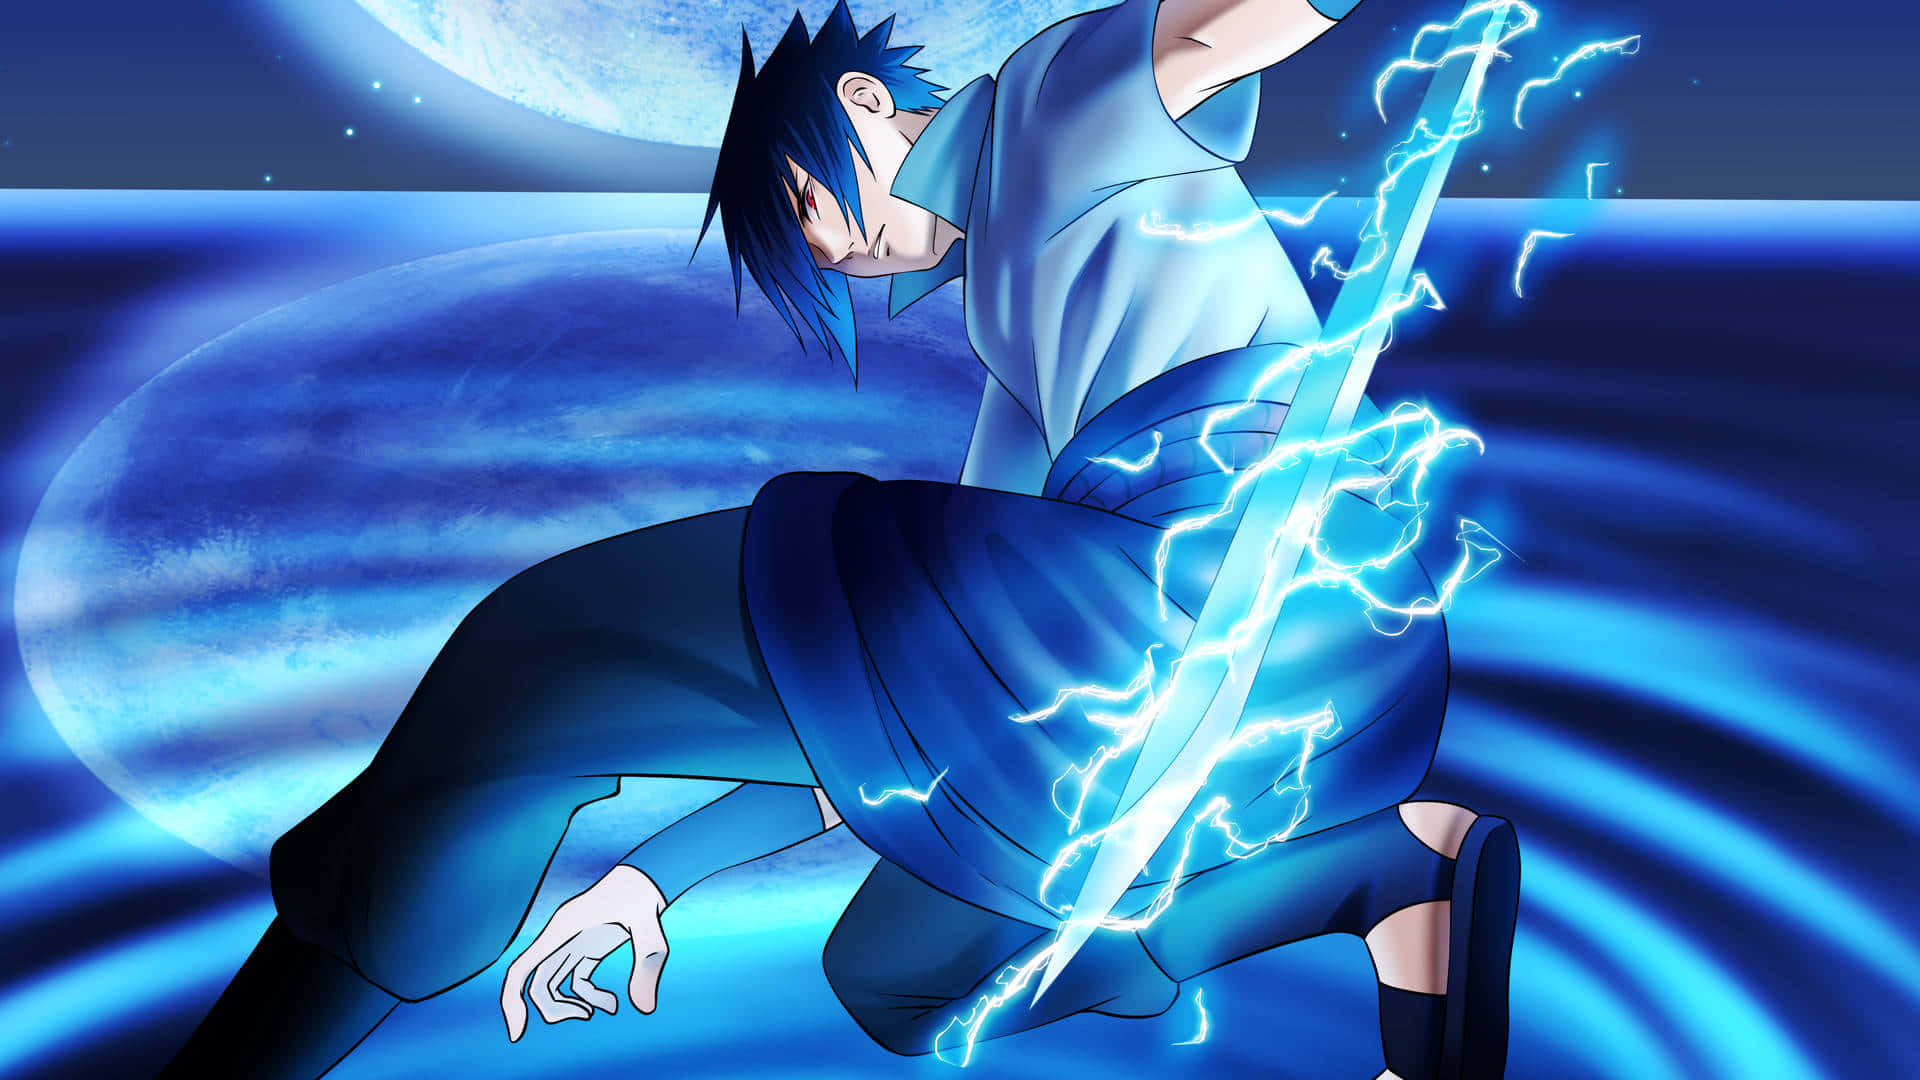 Sasuke Uchiha, en af hovedkaraktererne i mangaserien Naruto! Wallpaper